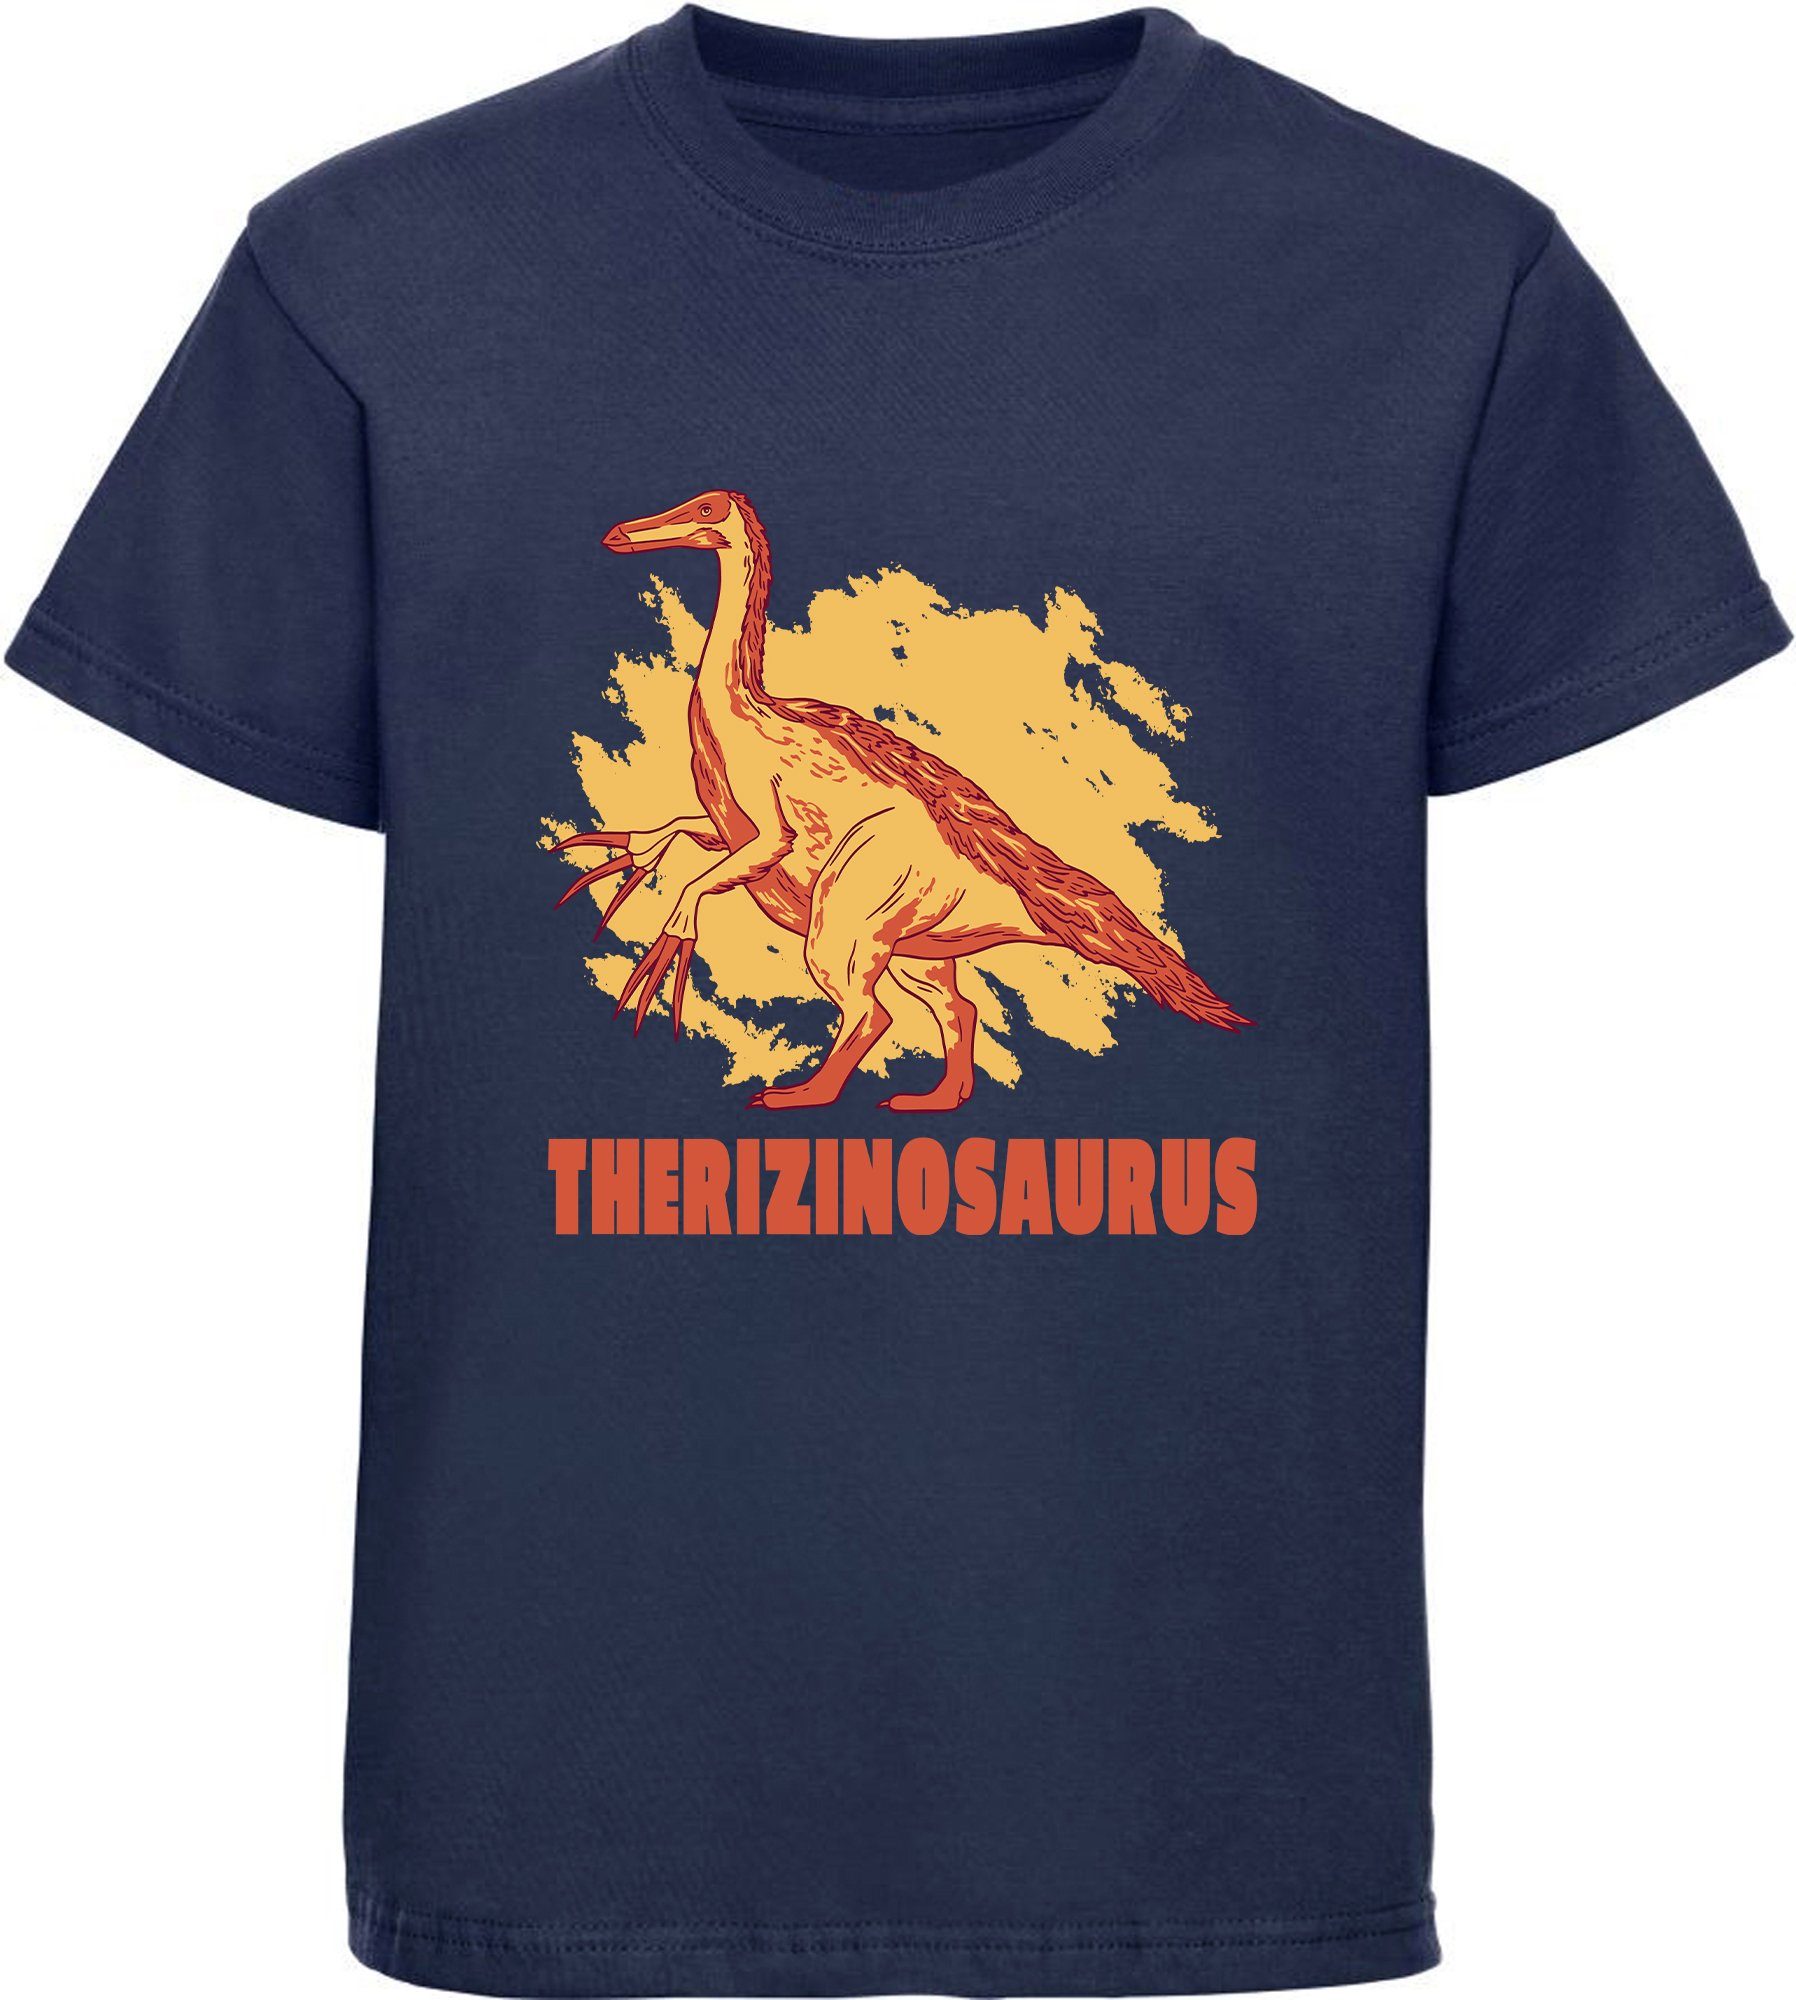 MyDesign24 Print-Shirt bedrucktes Kinder T-Shirt mit Therizinosaurus Baumwollshirt mit Dino, schwarz, weiß, rot, blau, i87 navy blau